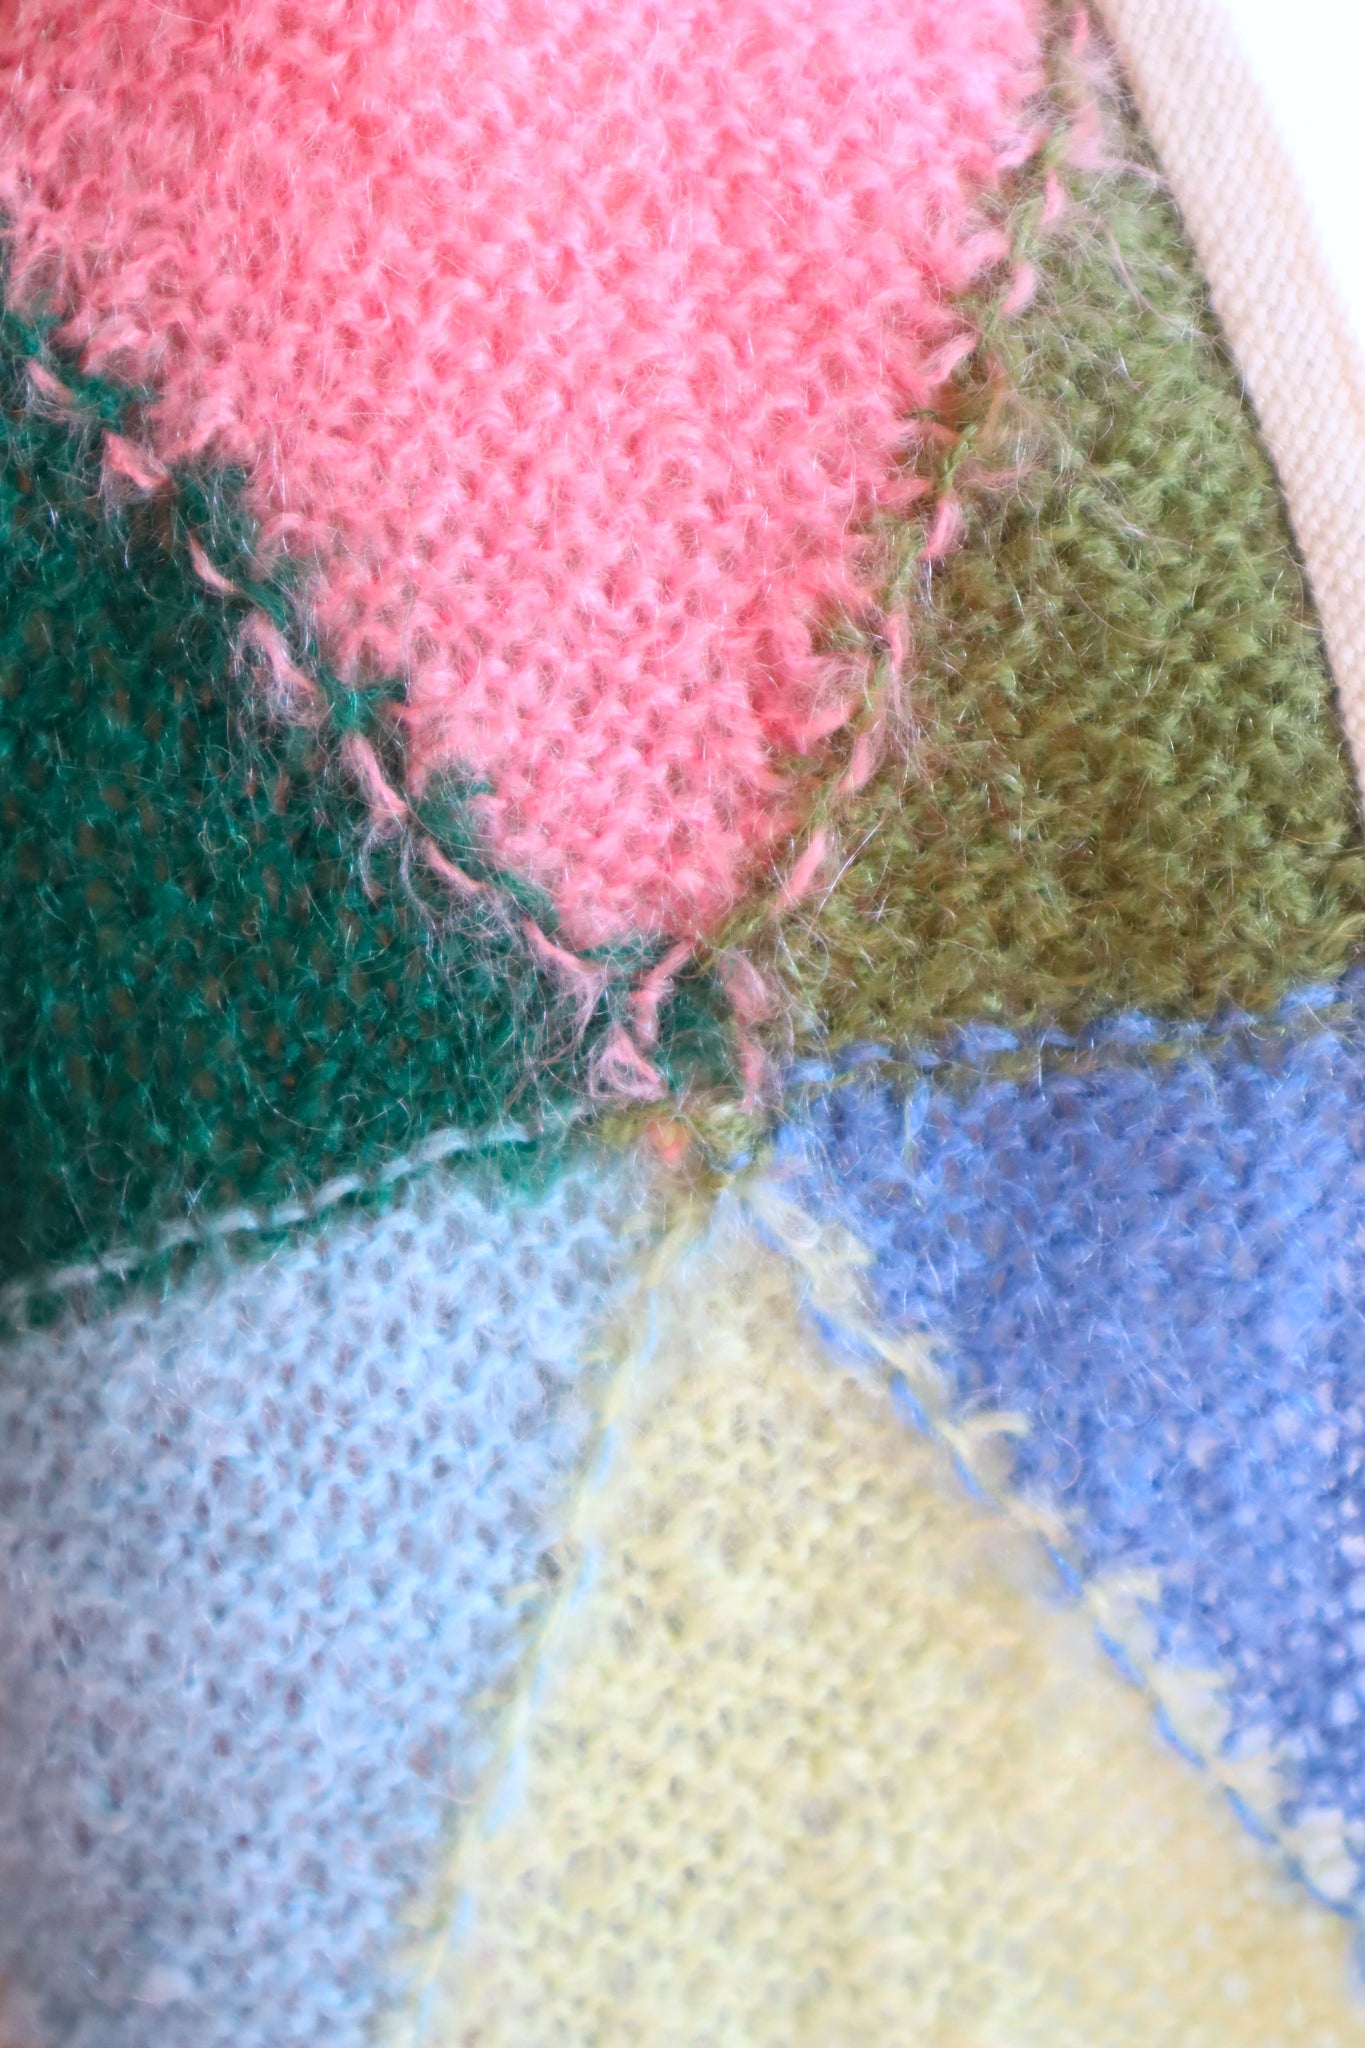 60s Fluffy Mohair Rainbow Geometric Cardigan